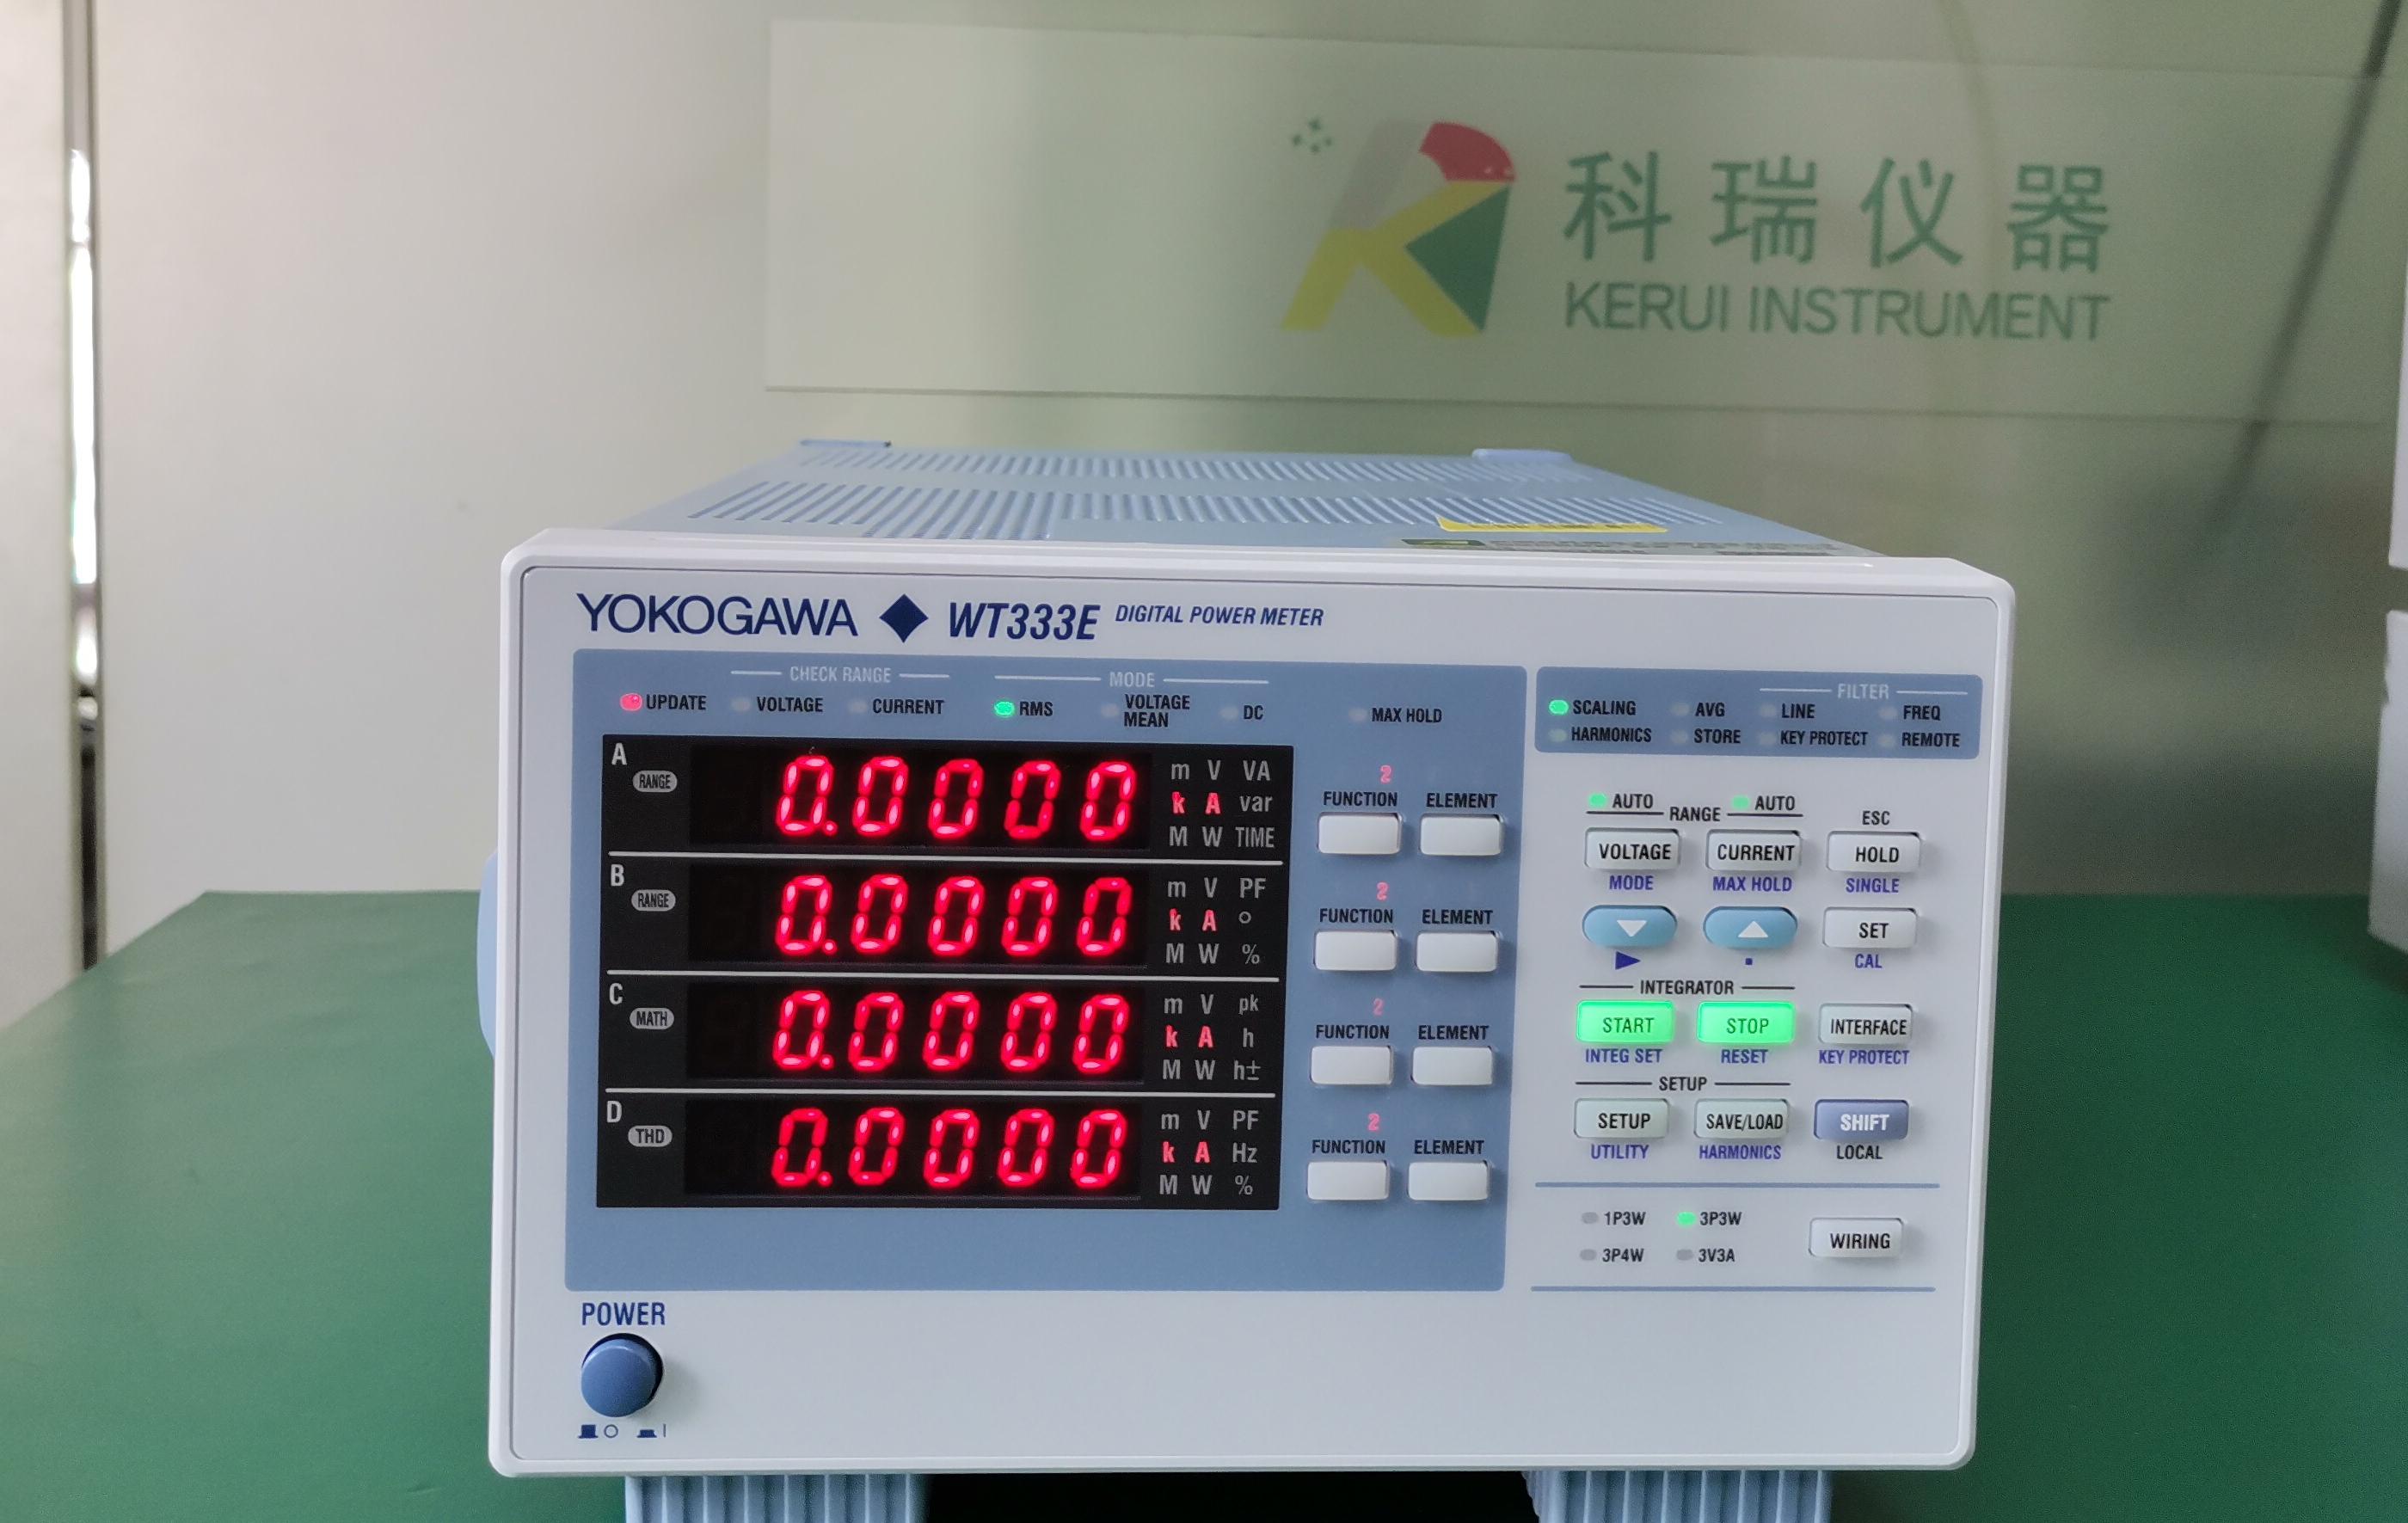 泰克Tektronix MDO3104 混合域示波器-深圳市科瑞电子仪器设备有限公司 